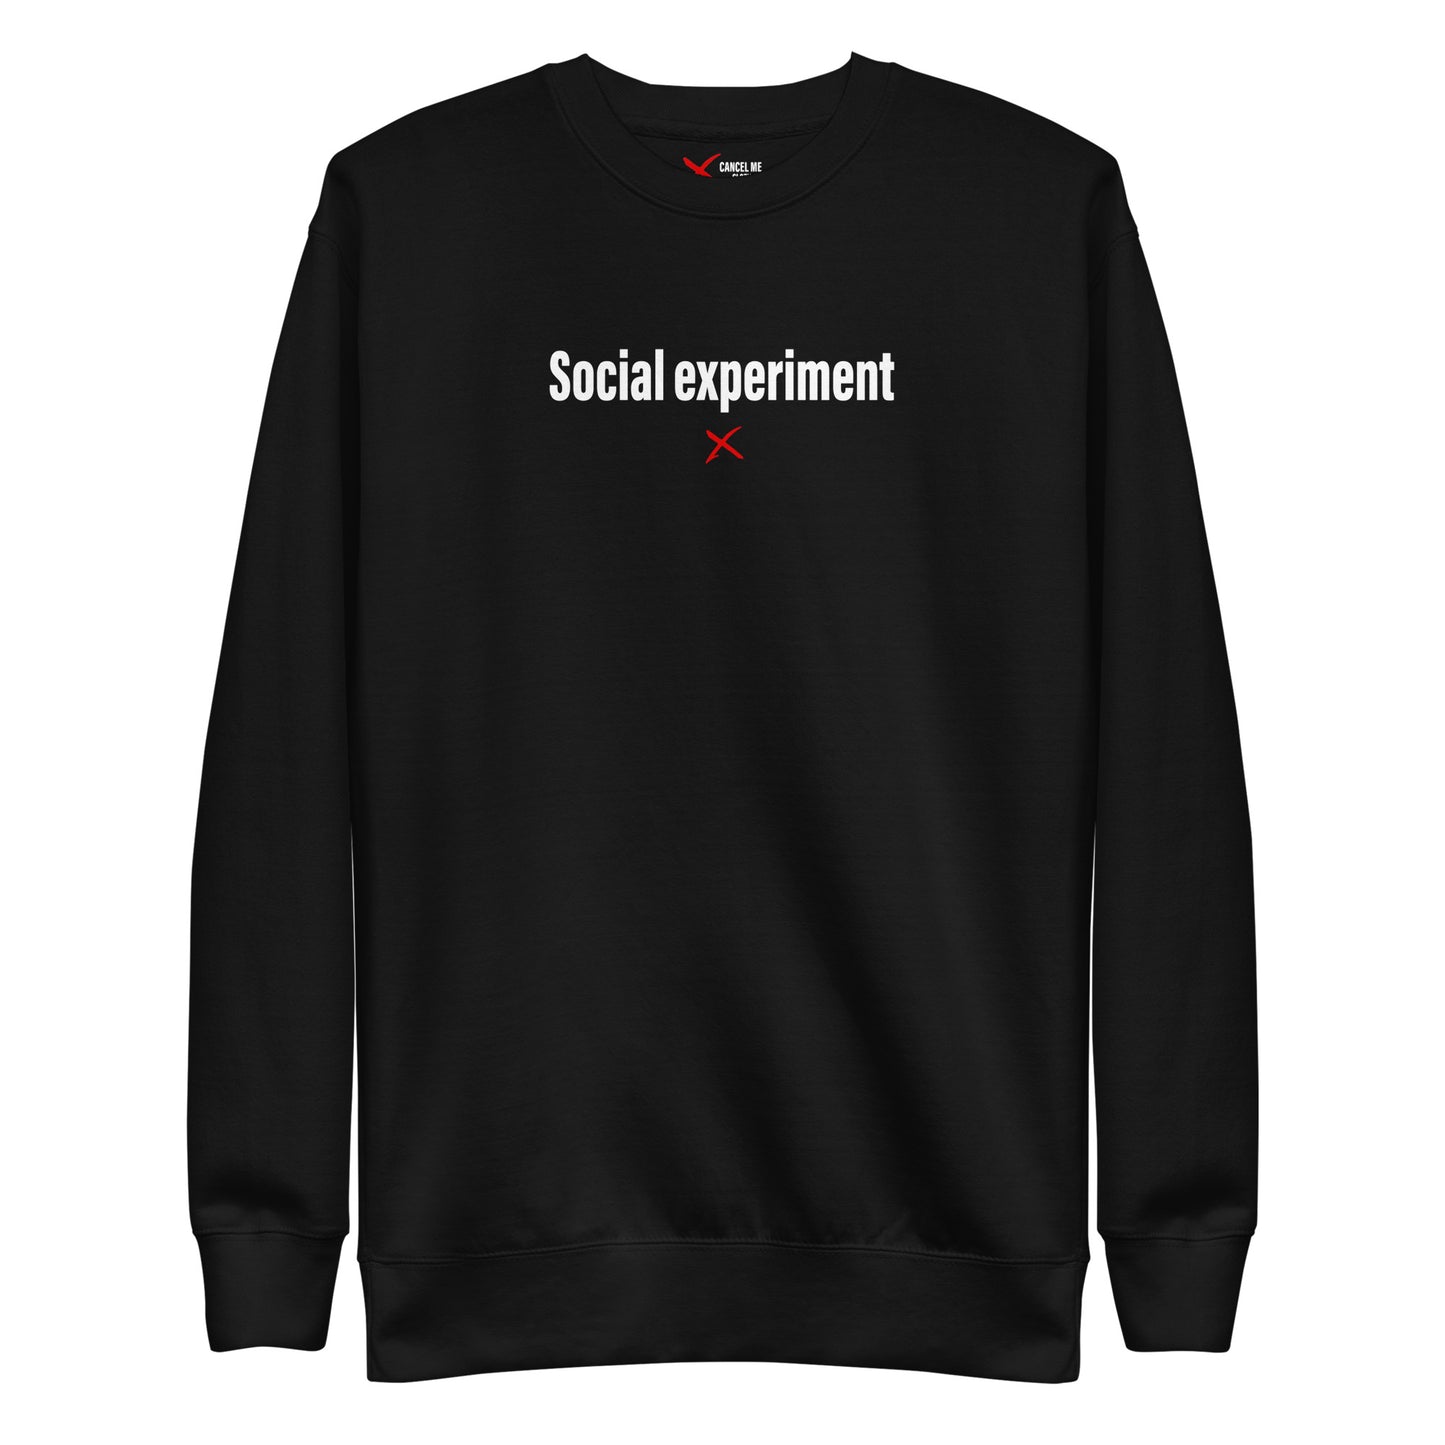 Social experiment - Sweatshirt